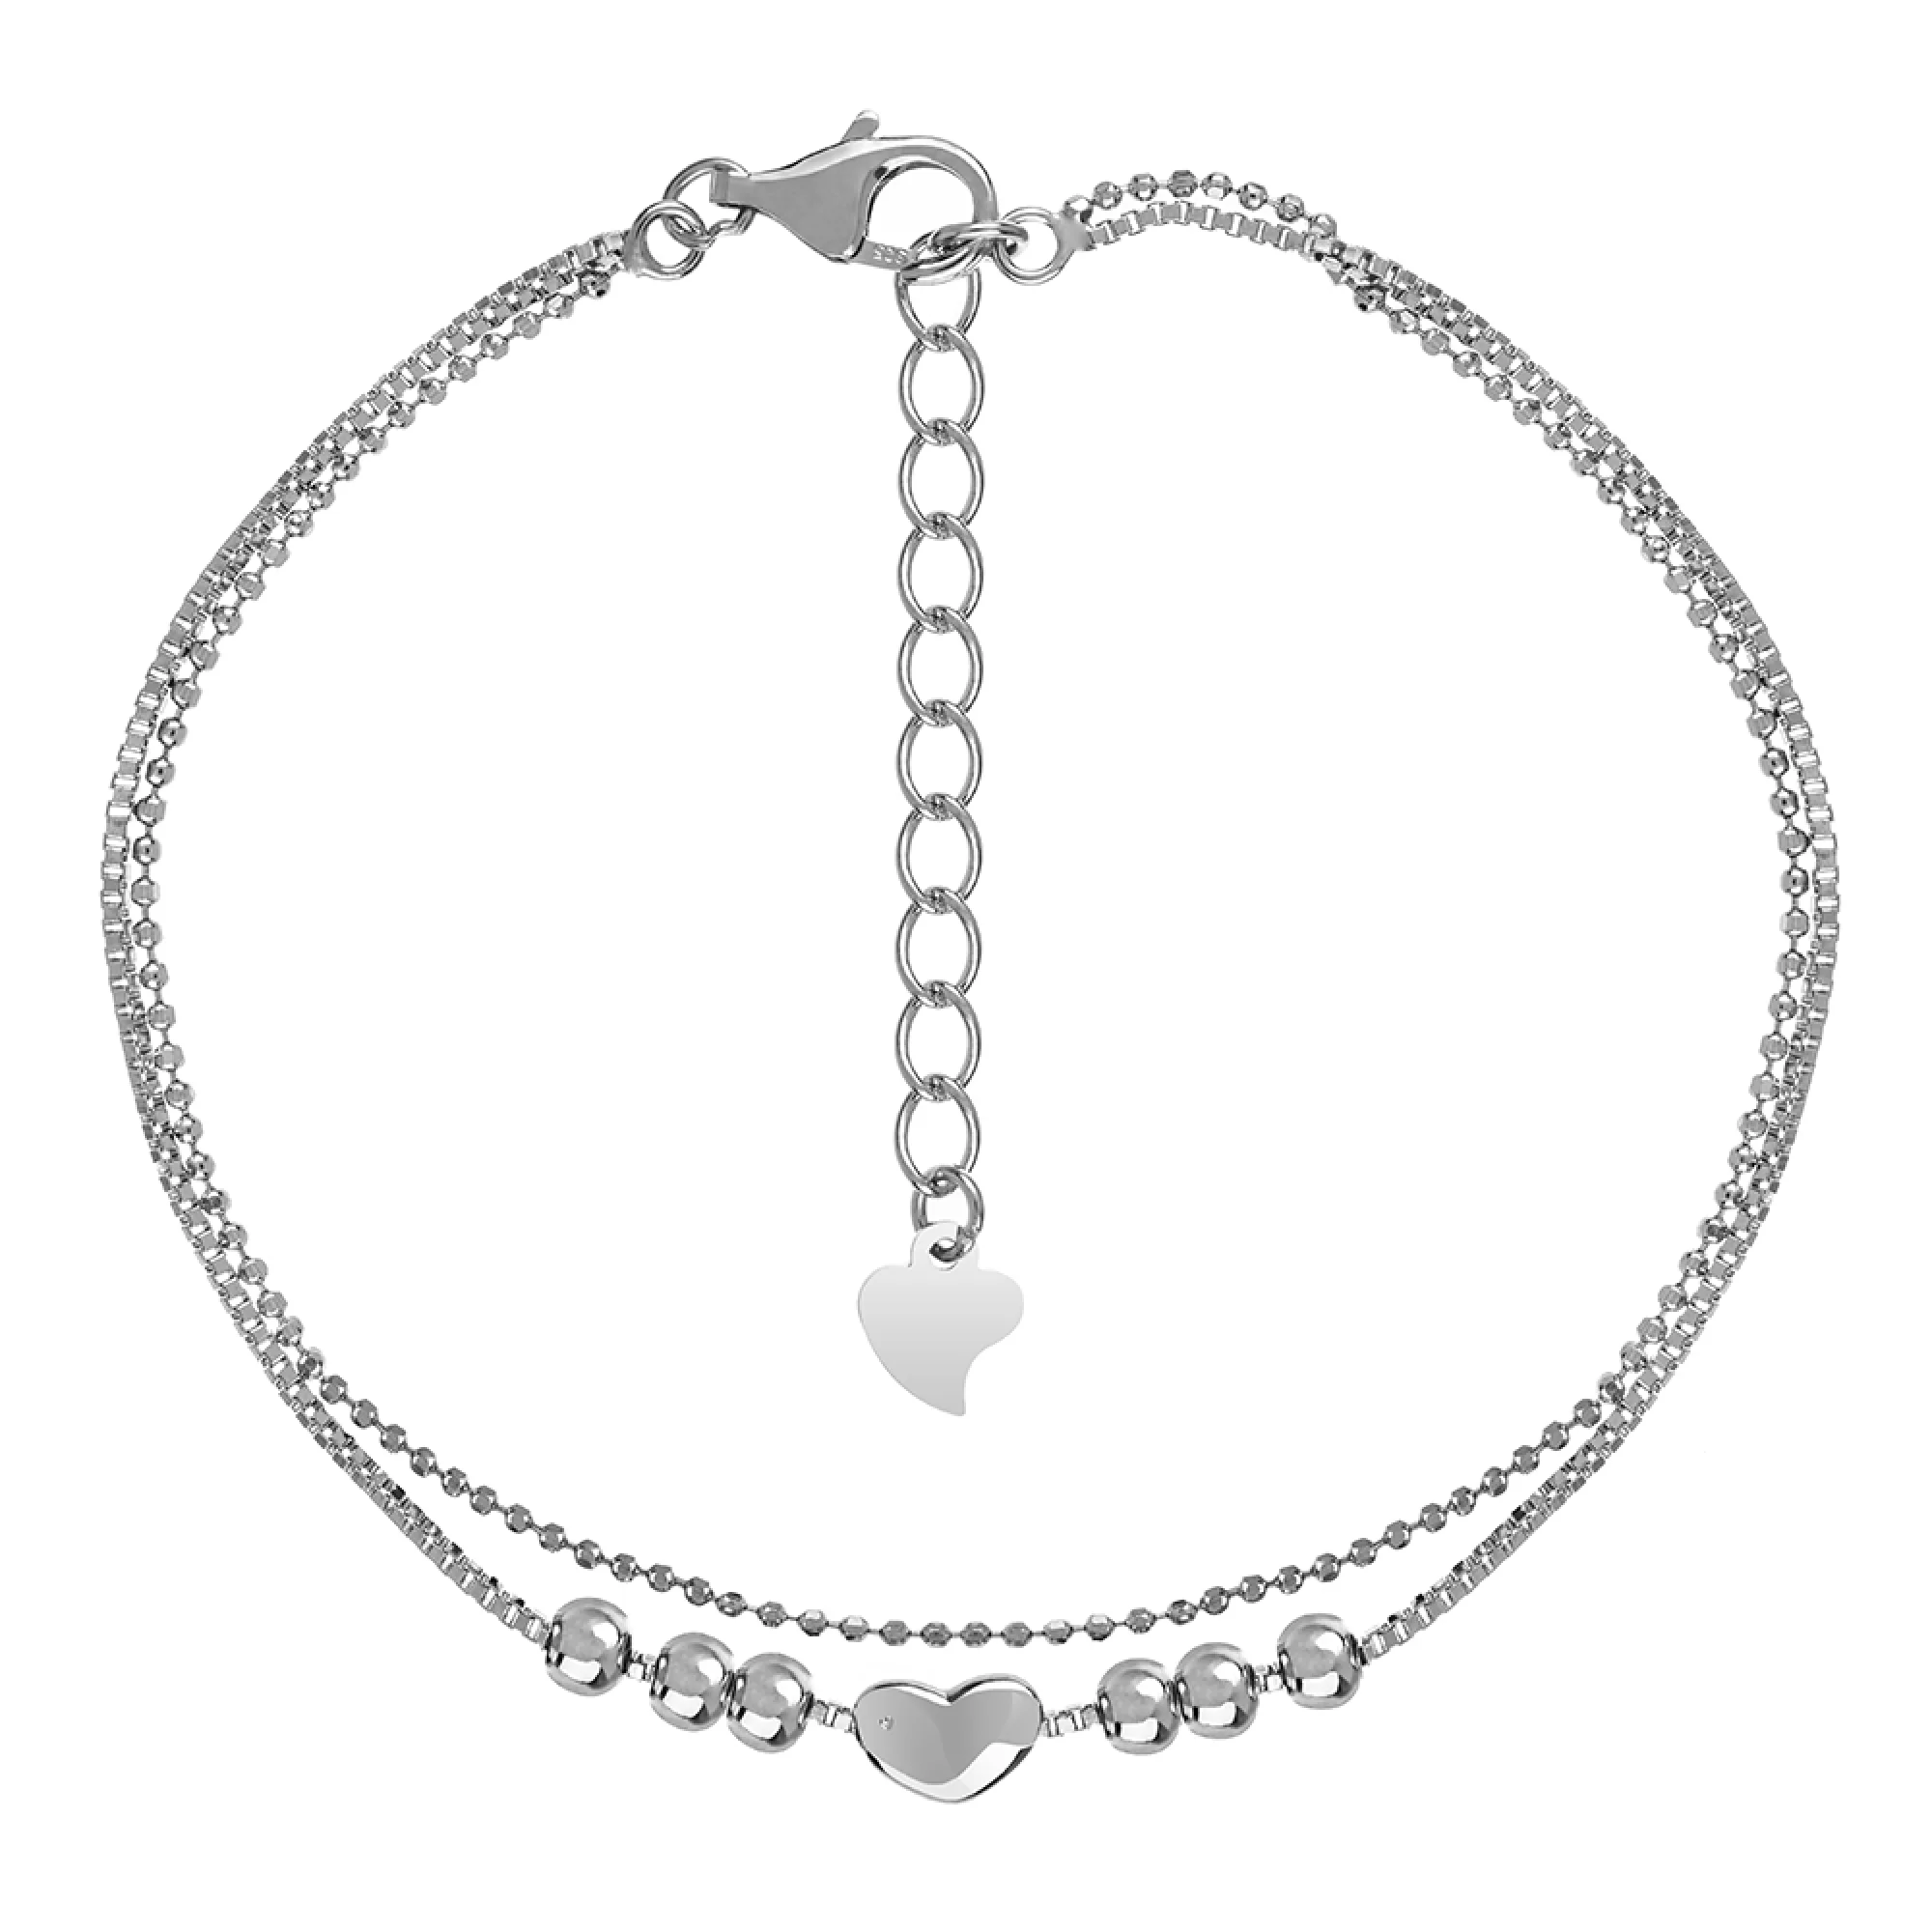 Срібний браслет "Сердечко" з подвійним плетінням  - 1553008 – зображення 1